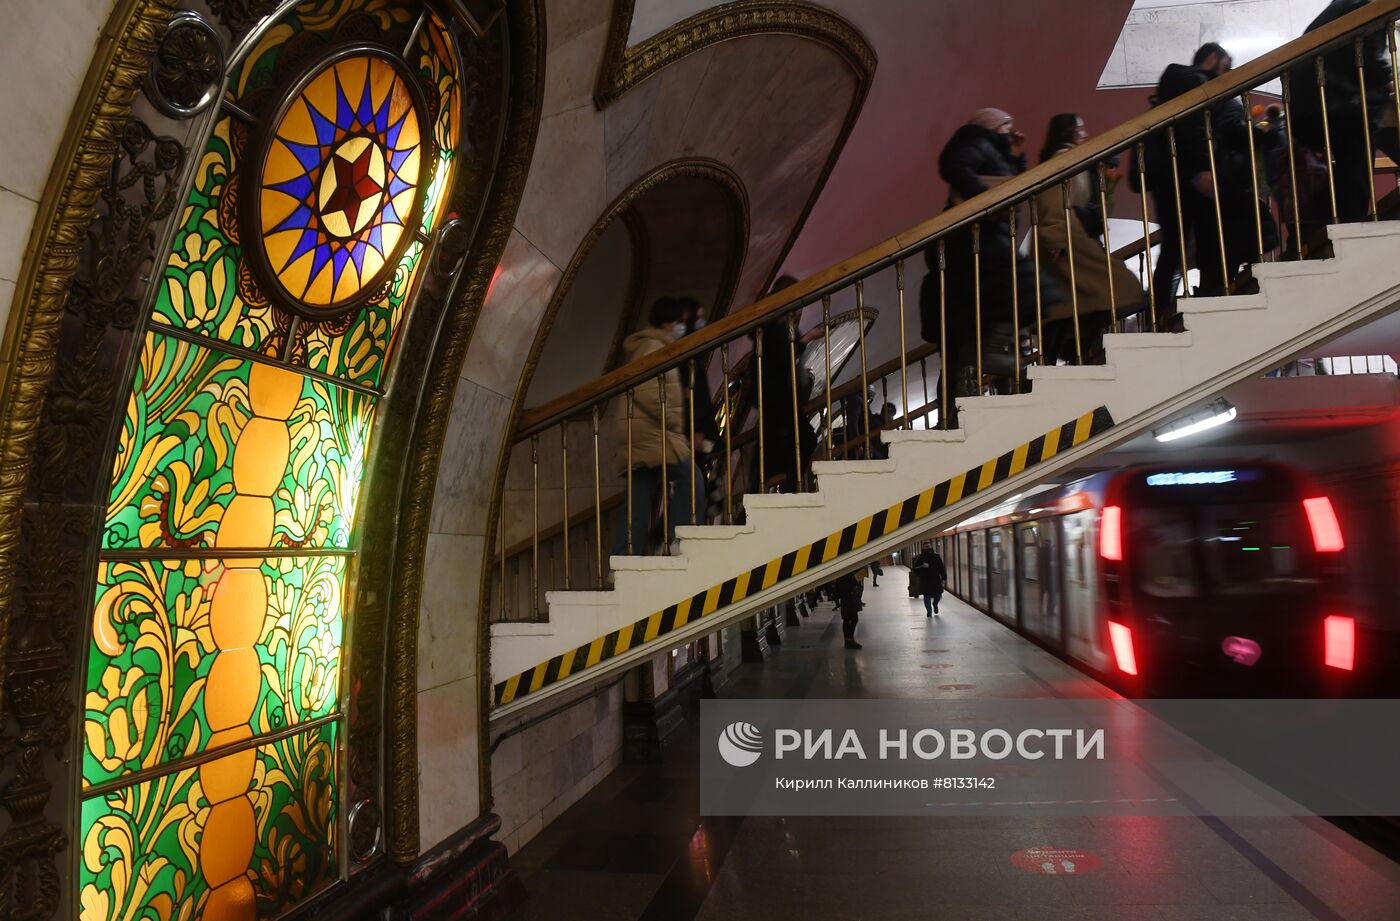 Вестибюль станции "Новослободская" Кольцевой линии открыли после ремонта